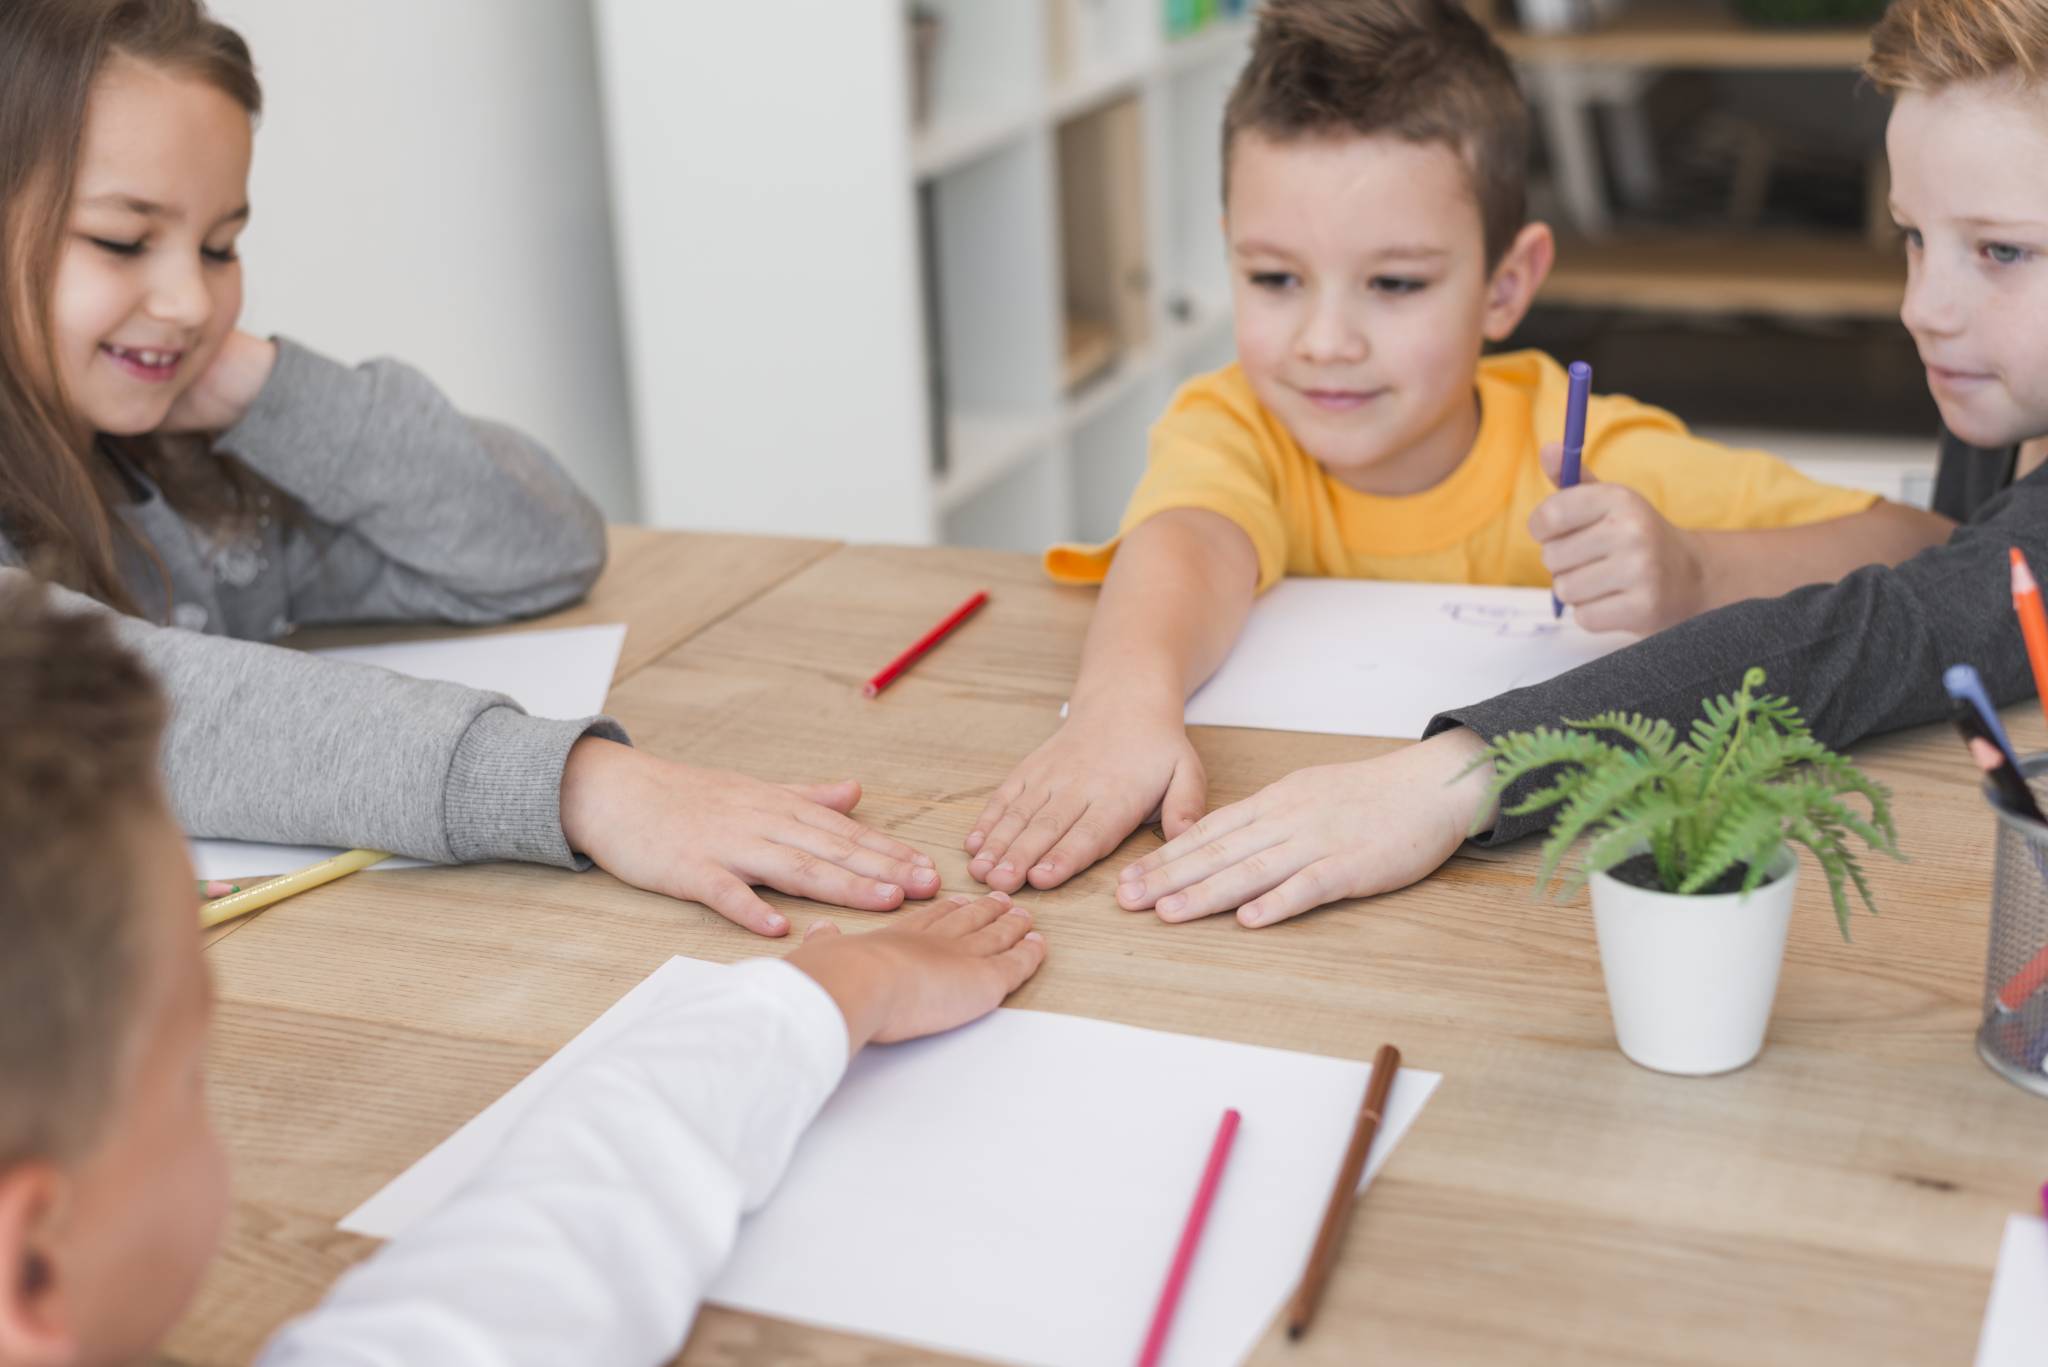 9 Strategies For Teaching Social Skills To ASD Children